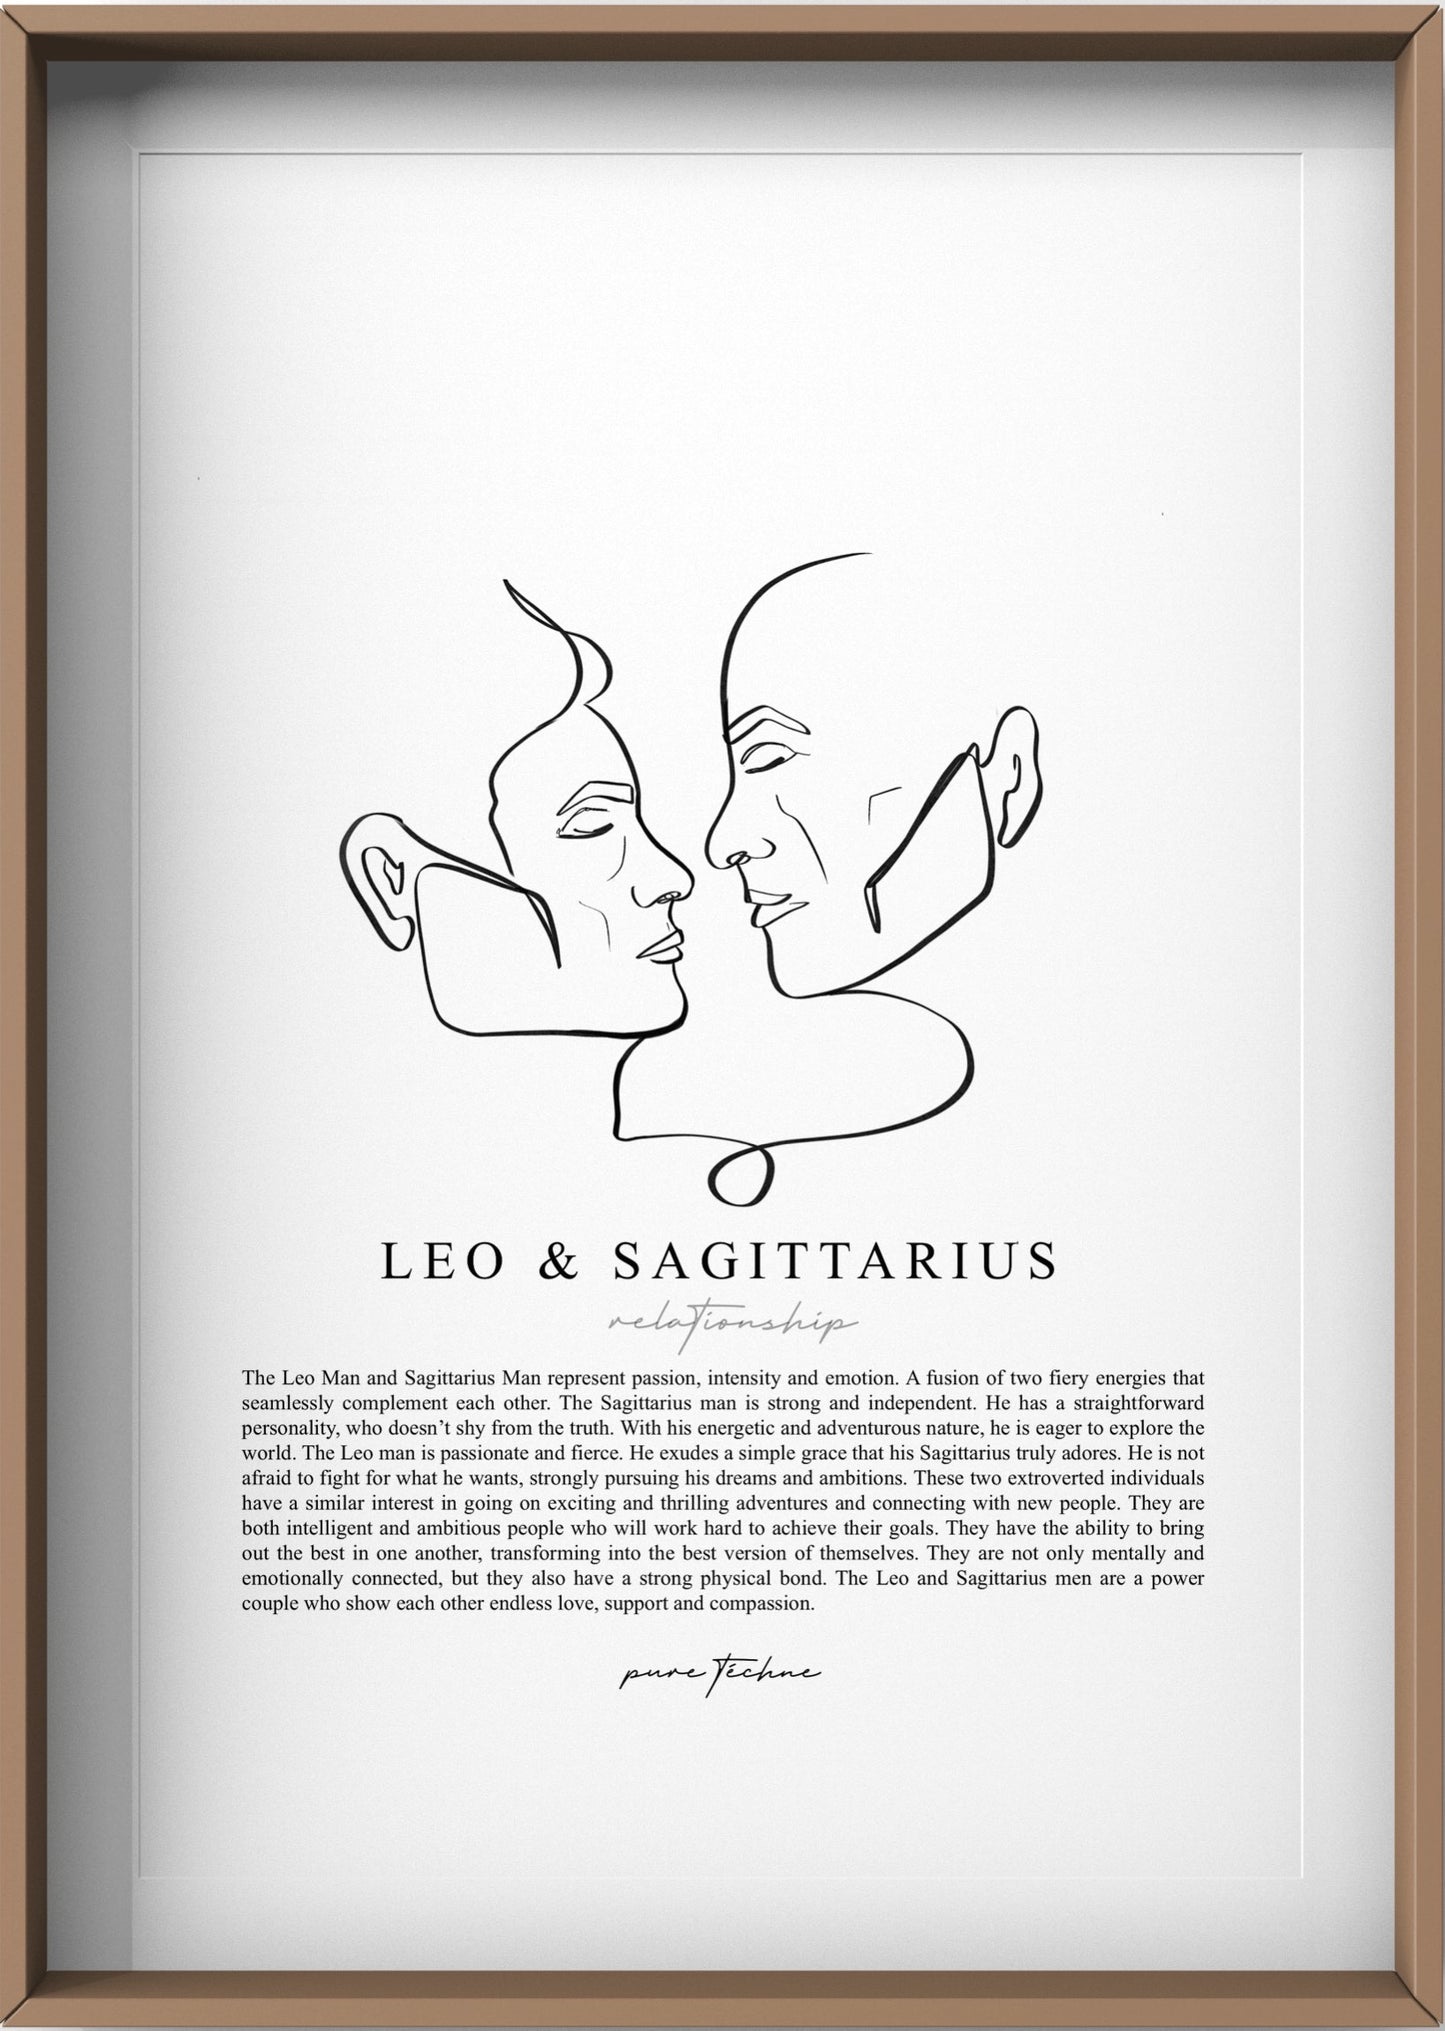 Leo Man & Sagittarius Man